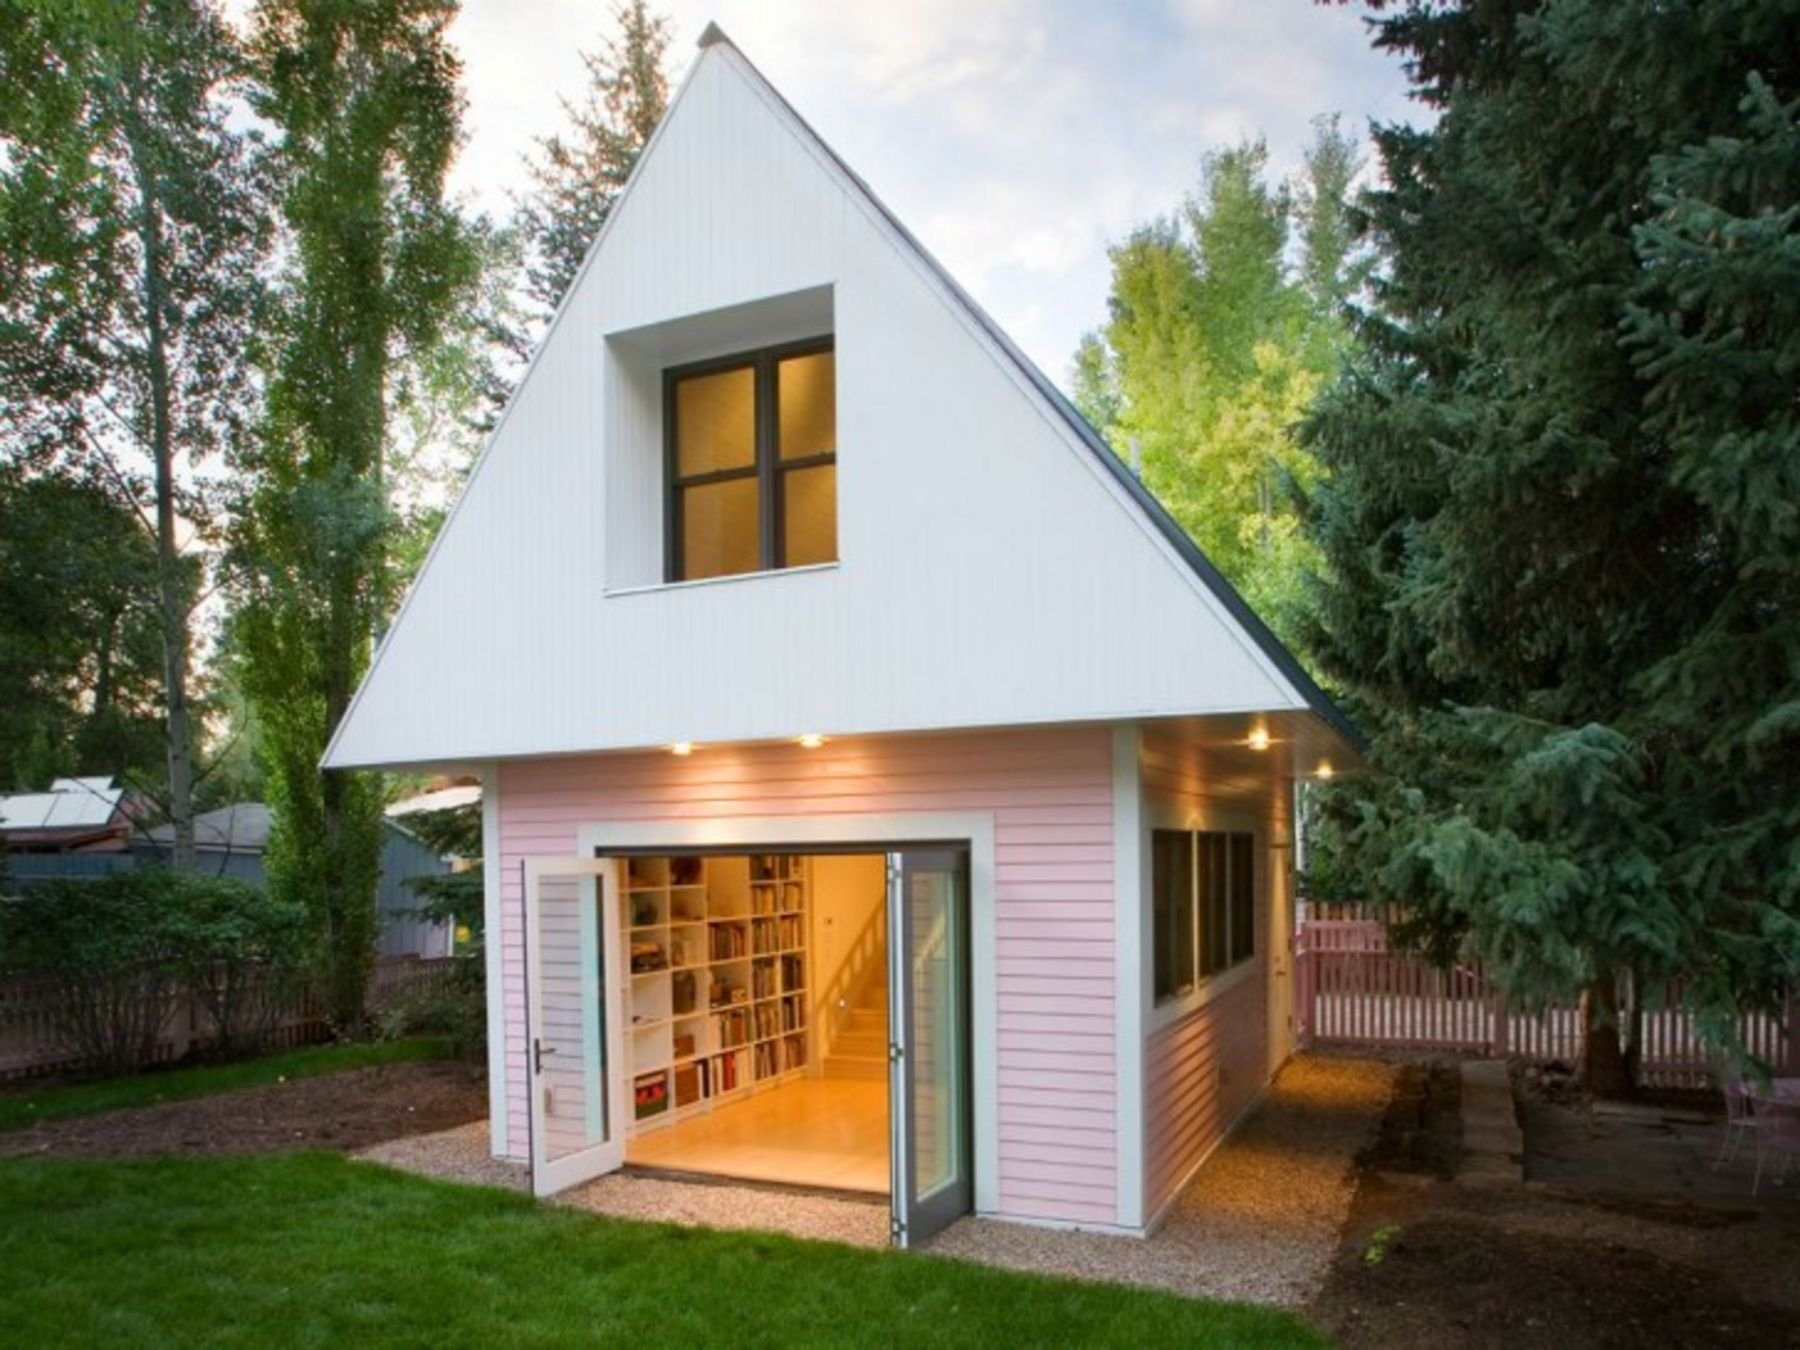 Дизайн интерьера небольшого дома — идеи для собственного маленького коттеджа (52 фото) | онлайн-журнал о ремонте и дизайне